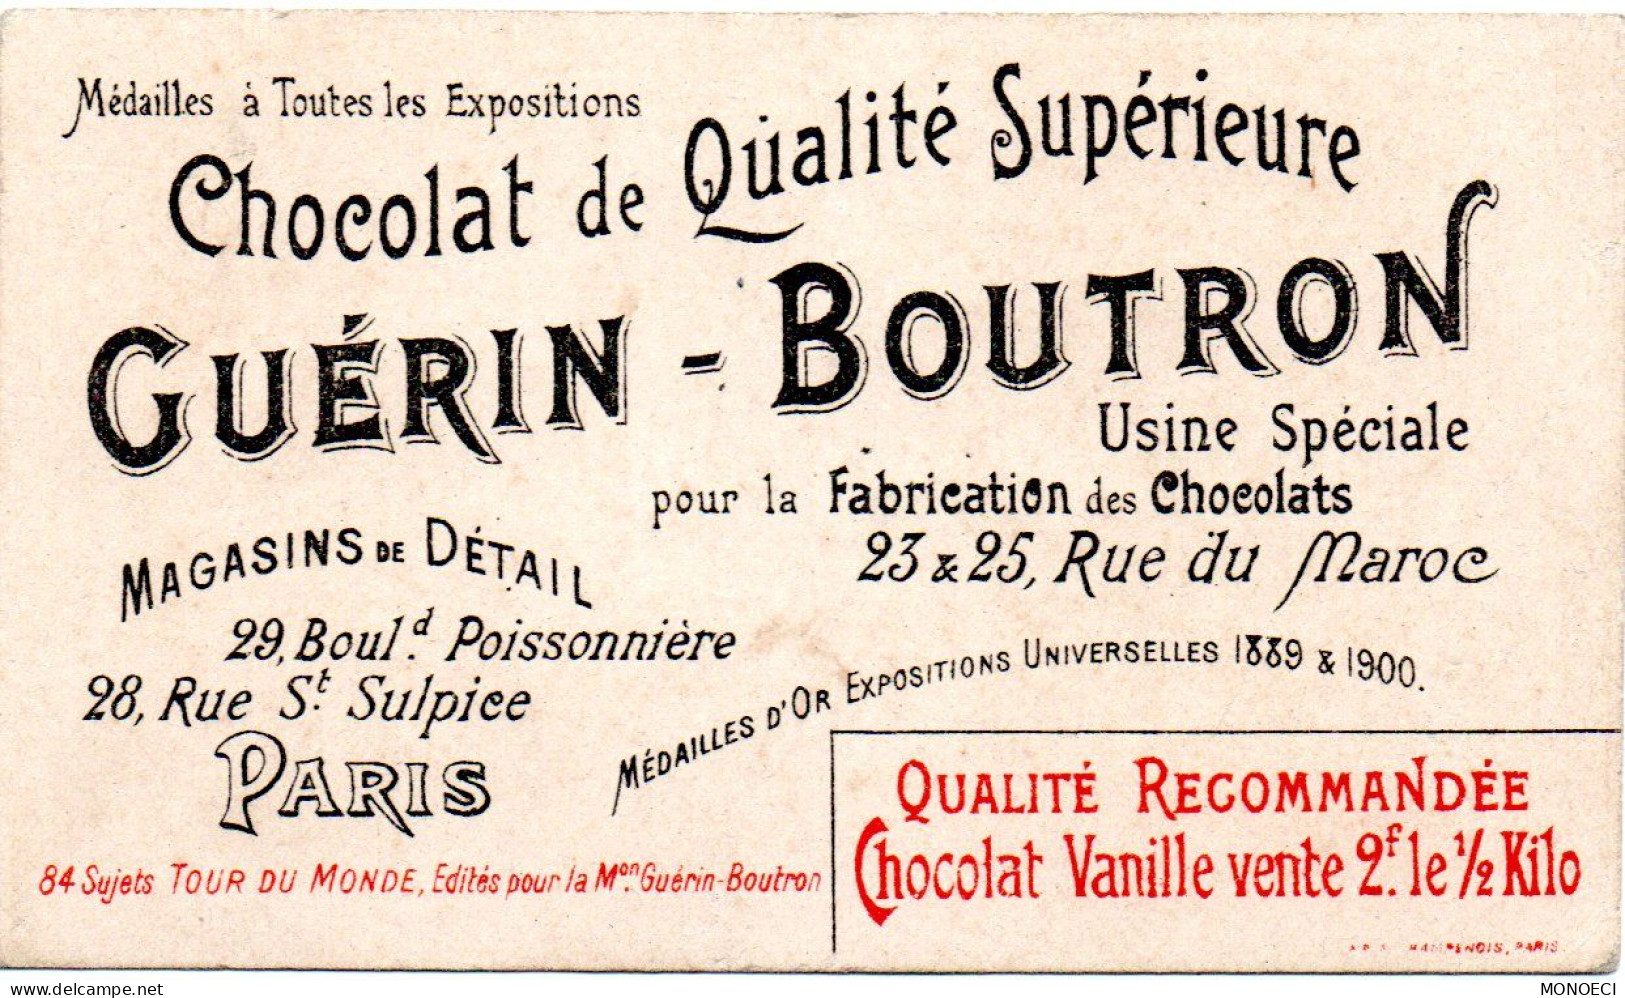 FRANCE -- Chromo -- Chocolat GUERIN-BOUTRON -- L' Entré Du Vieux Port De Marseille Et La Cathédrale - Guérin-Boutron